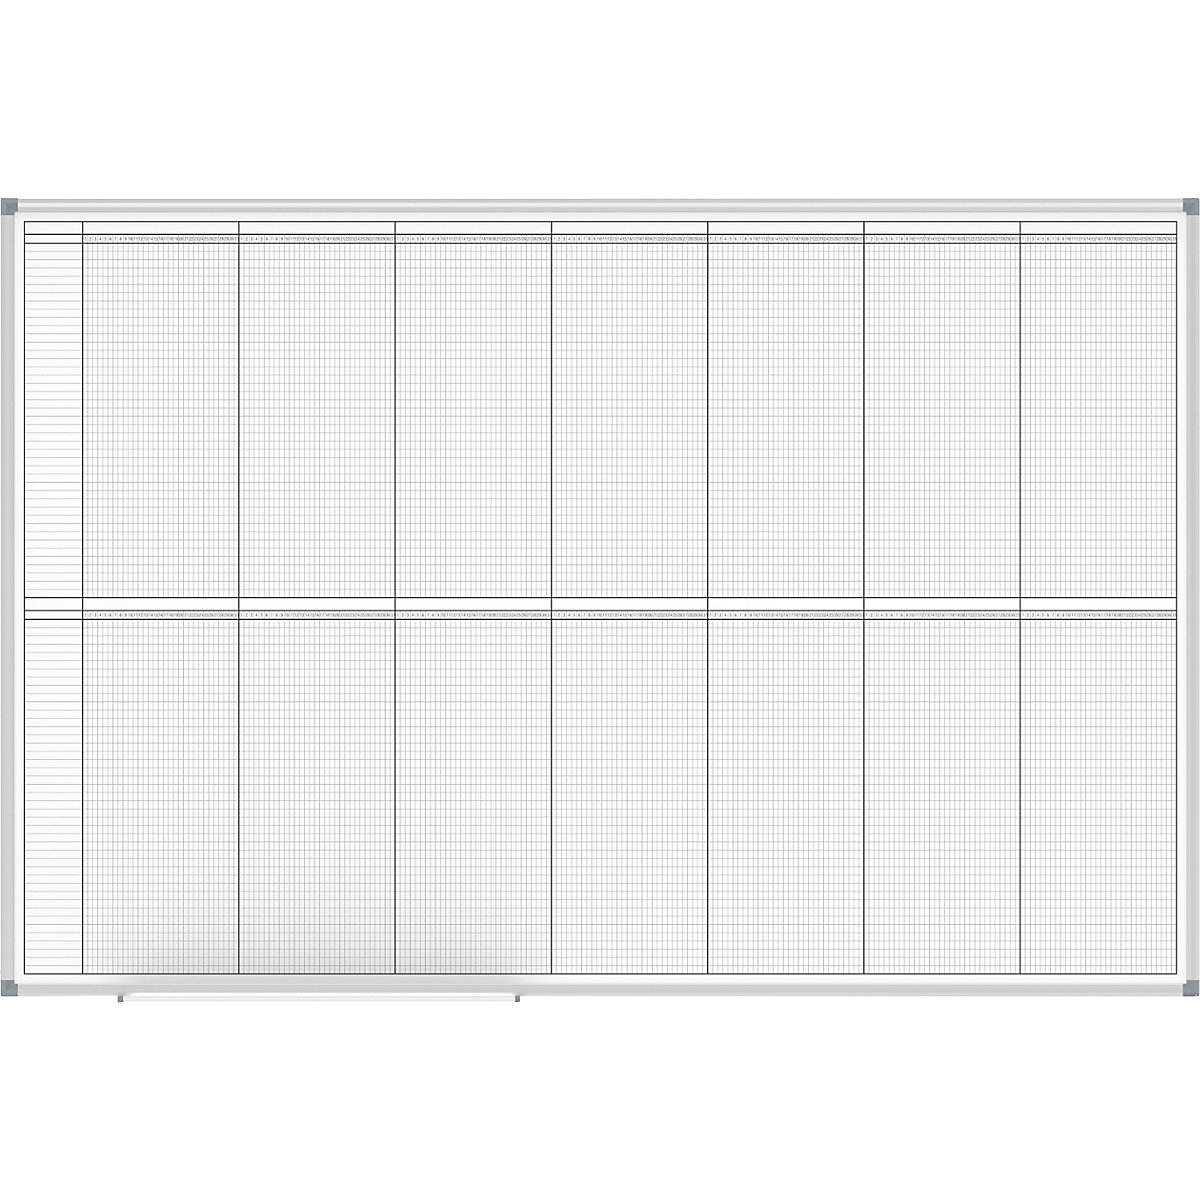 Načrtovalna tabla – MAUL, letni planer, prikaz 2 x 6 mesecev, širina 1500 mm-3